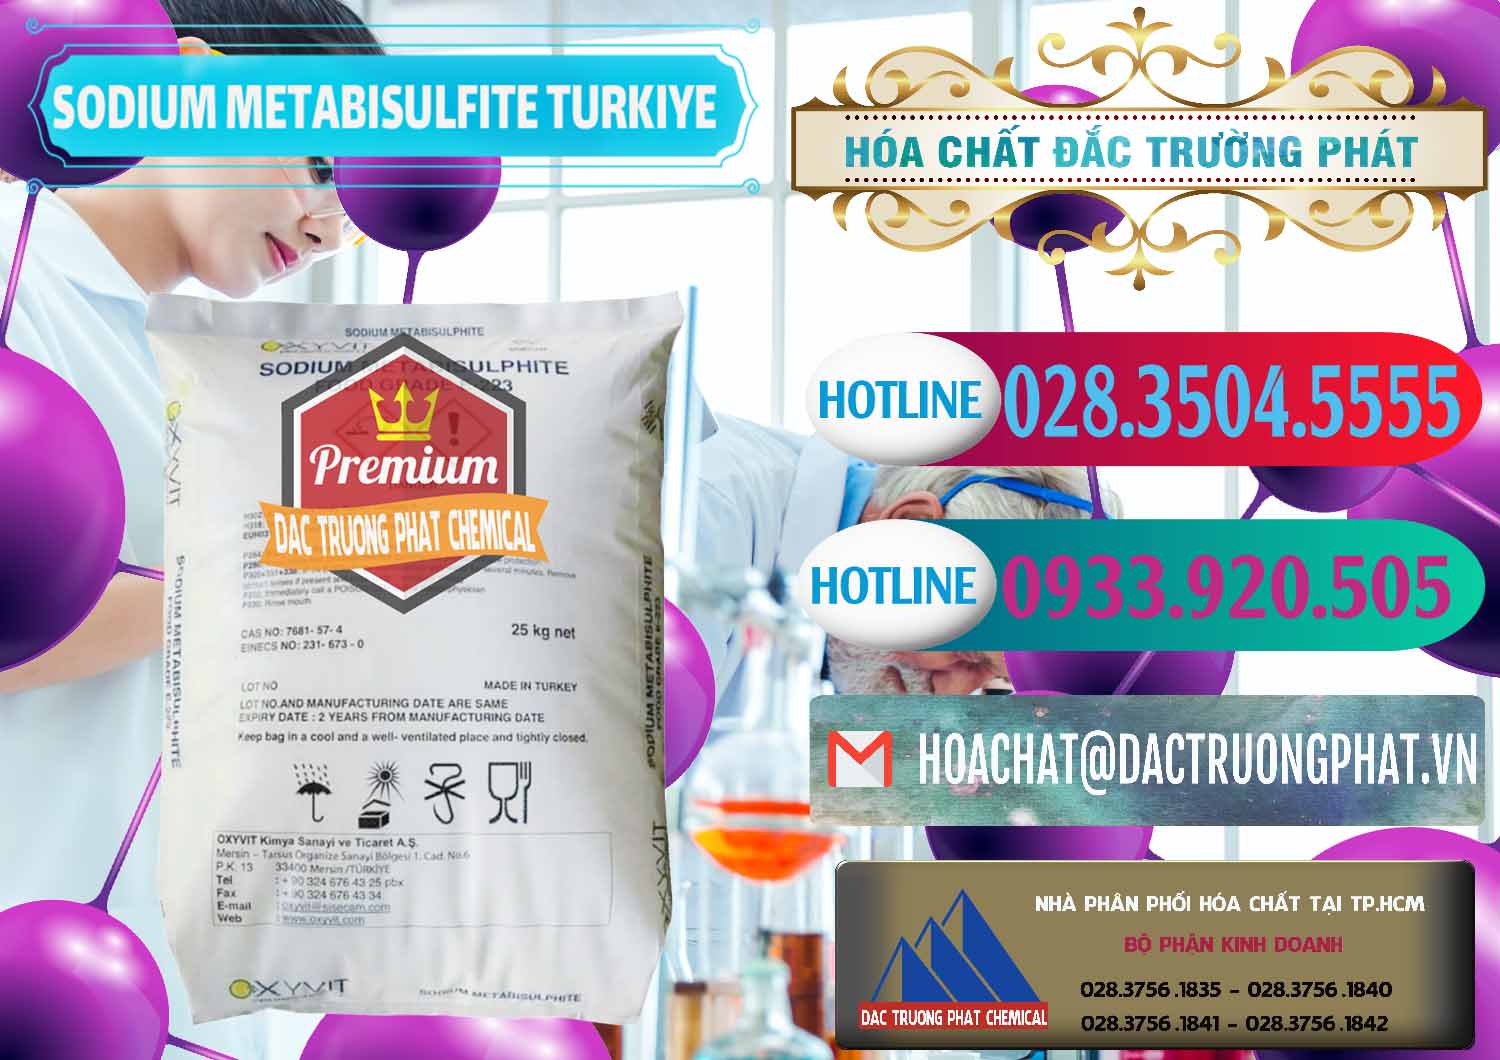 Cung cấp và bán Sodium Metabisulfite - NA2S2O5 Food Grade E-223 Thổ Nhĩ Kỳ Turkey - 0413 - Đơn vị chuyên kinh doanh & phân phối hóa chất tại TP.HCM - truongphat.vn